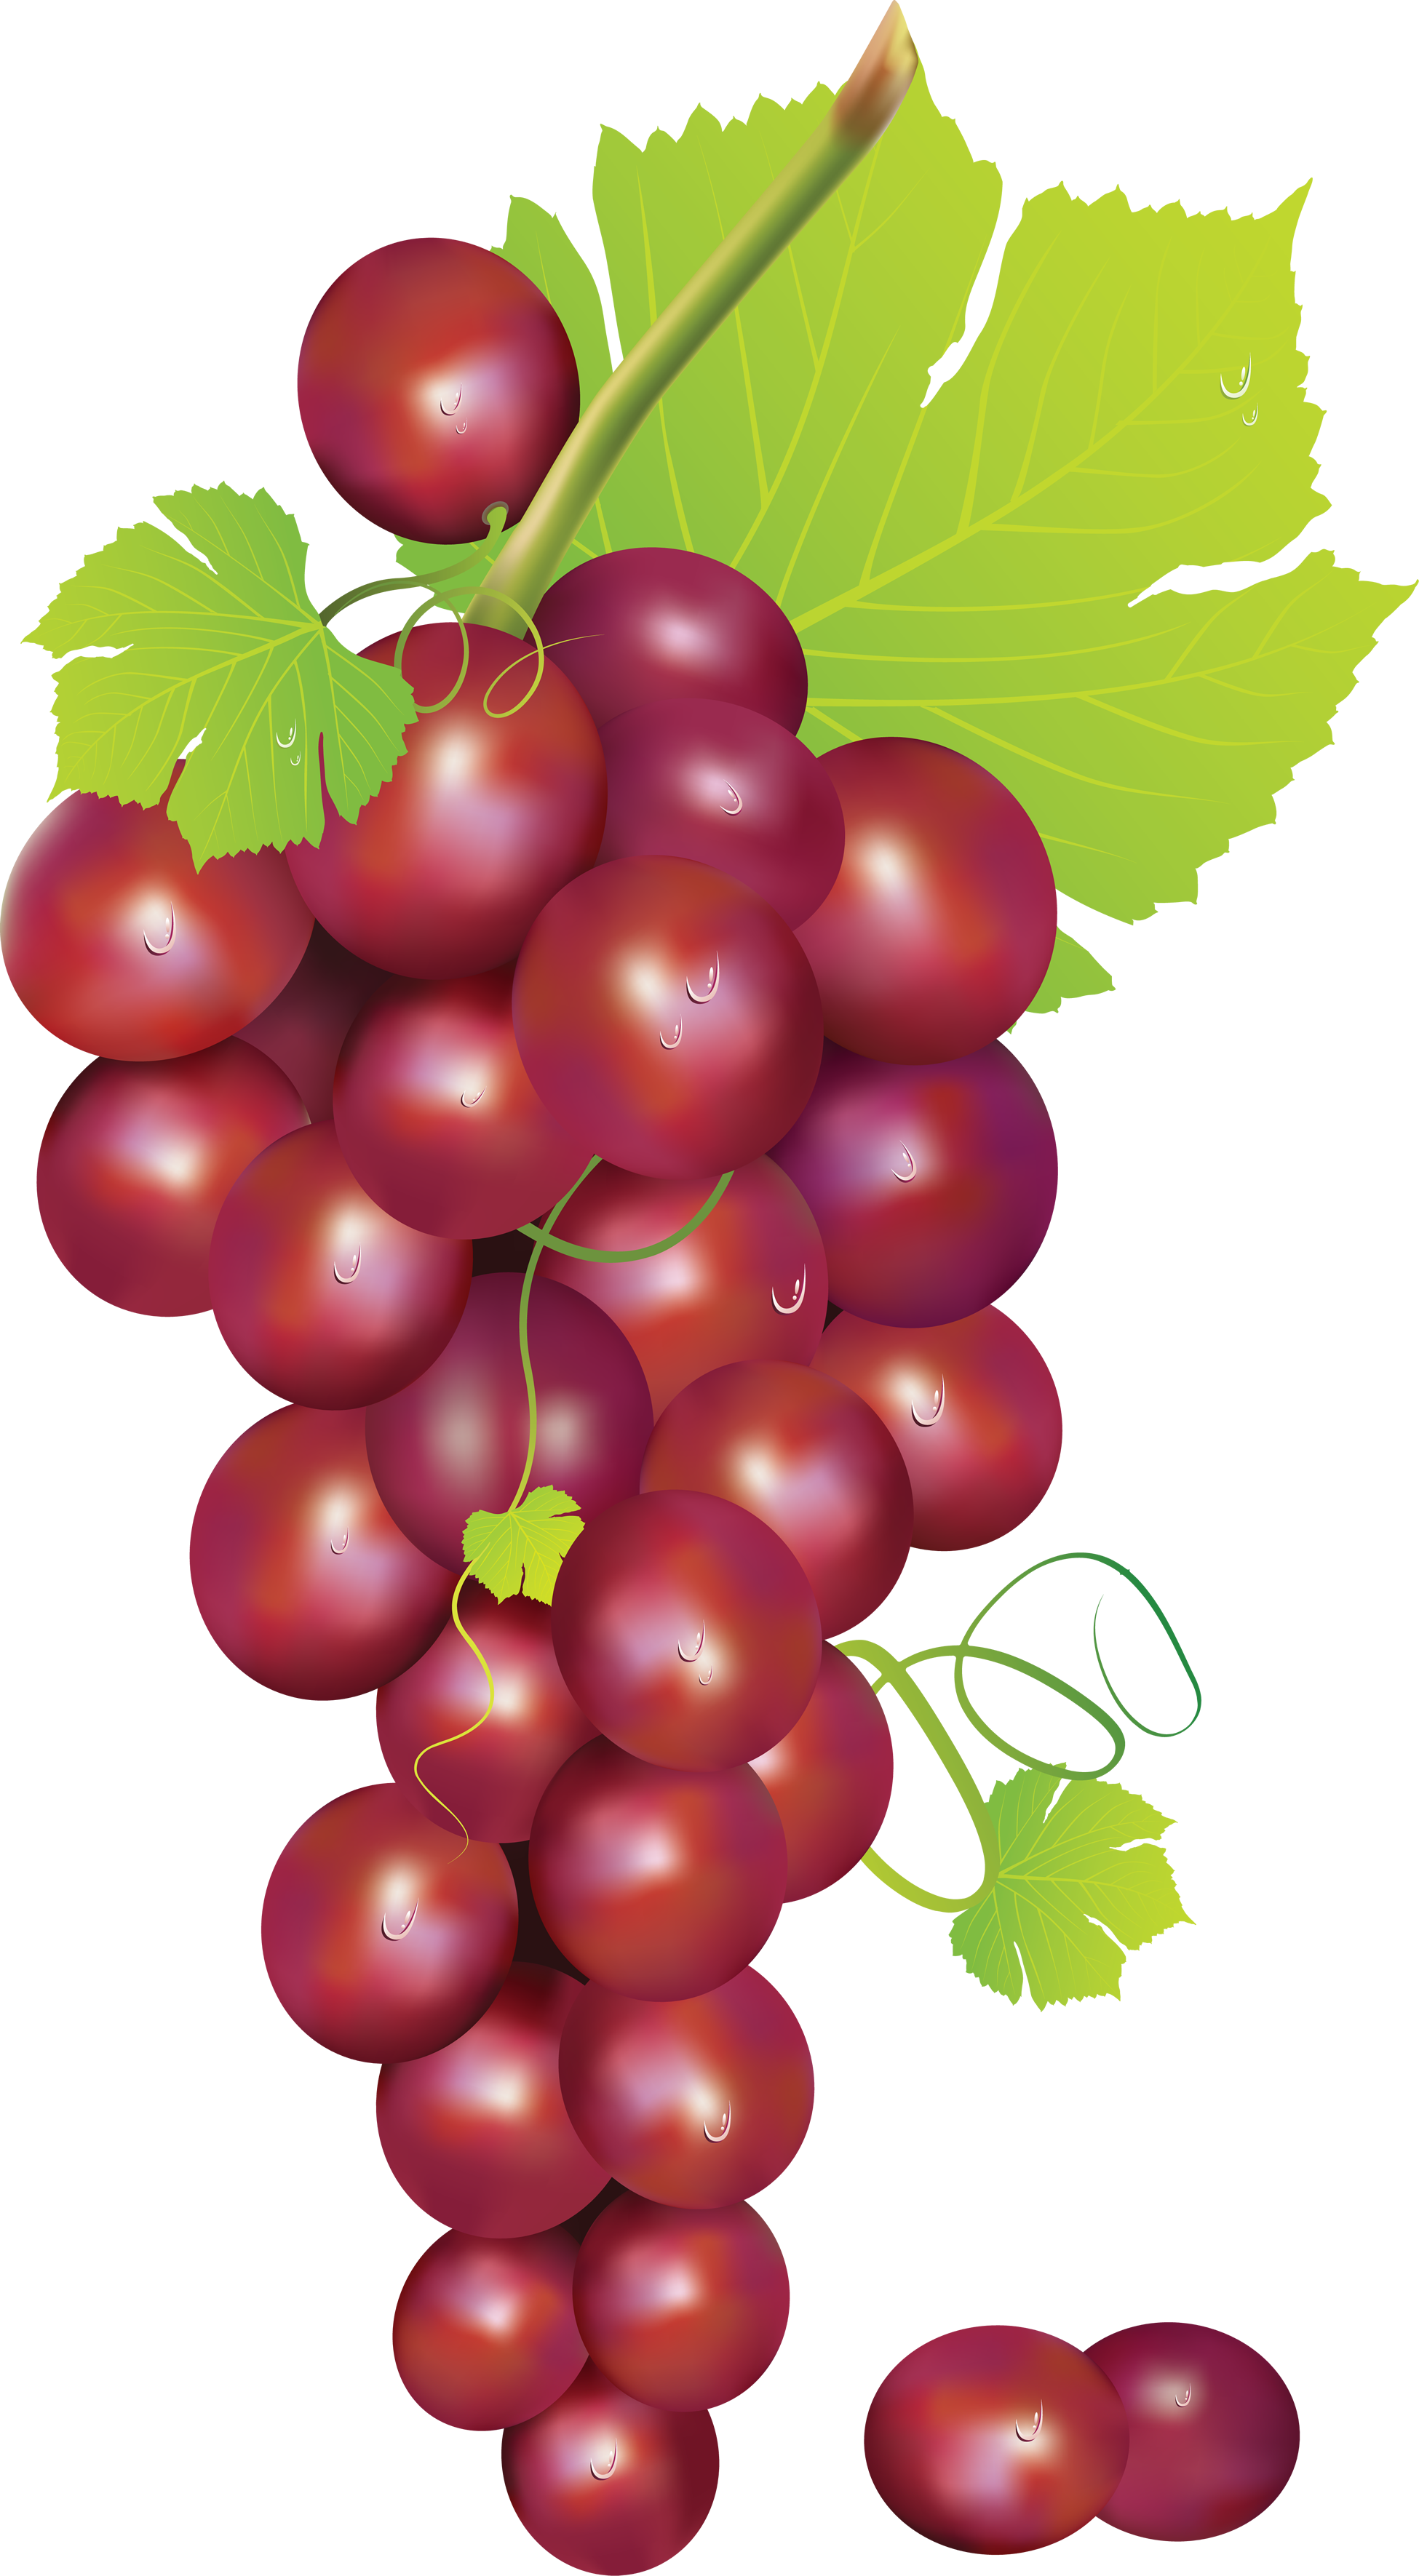 Grapes clip art at vector clip art image 2